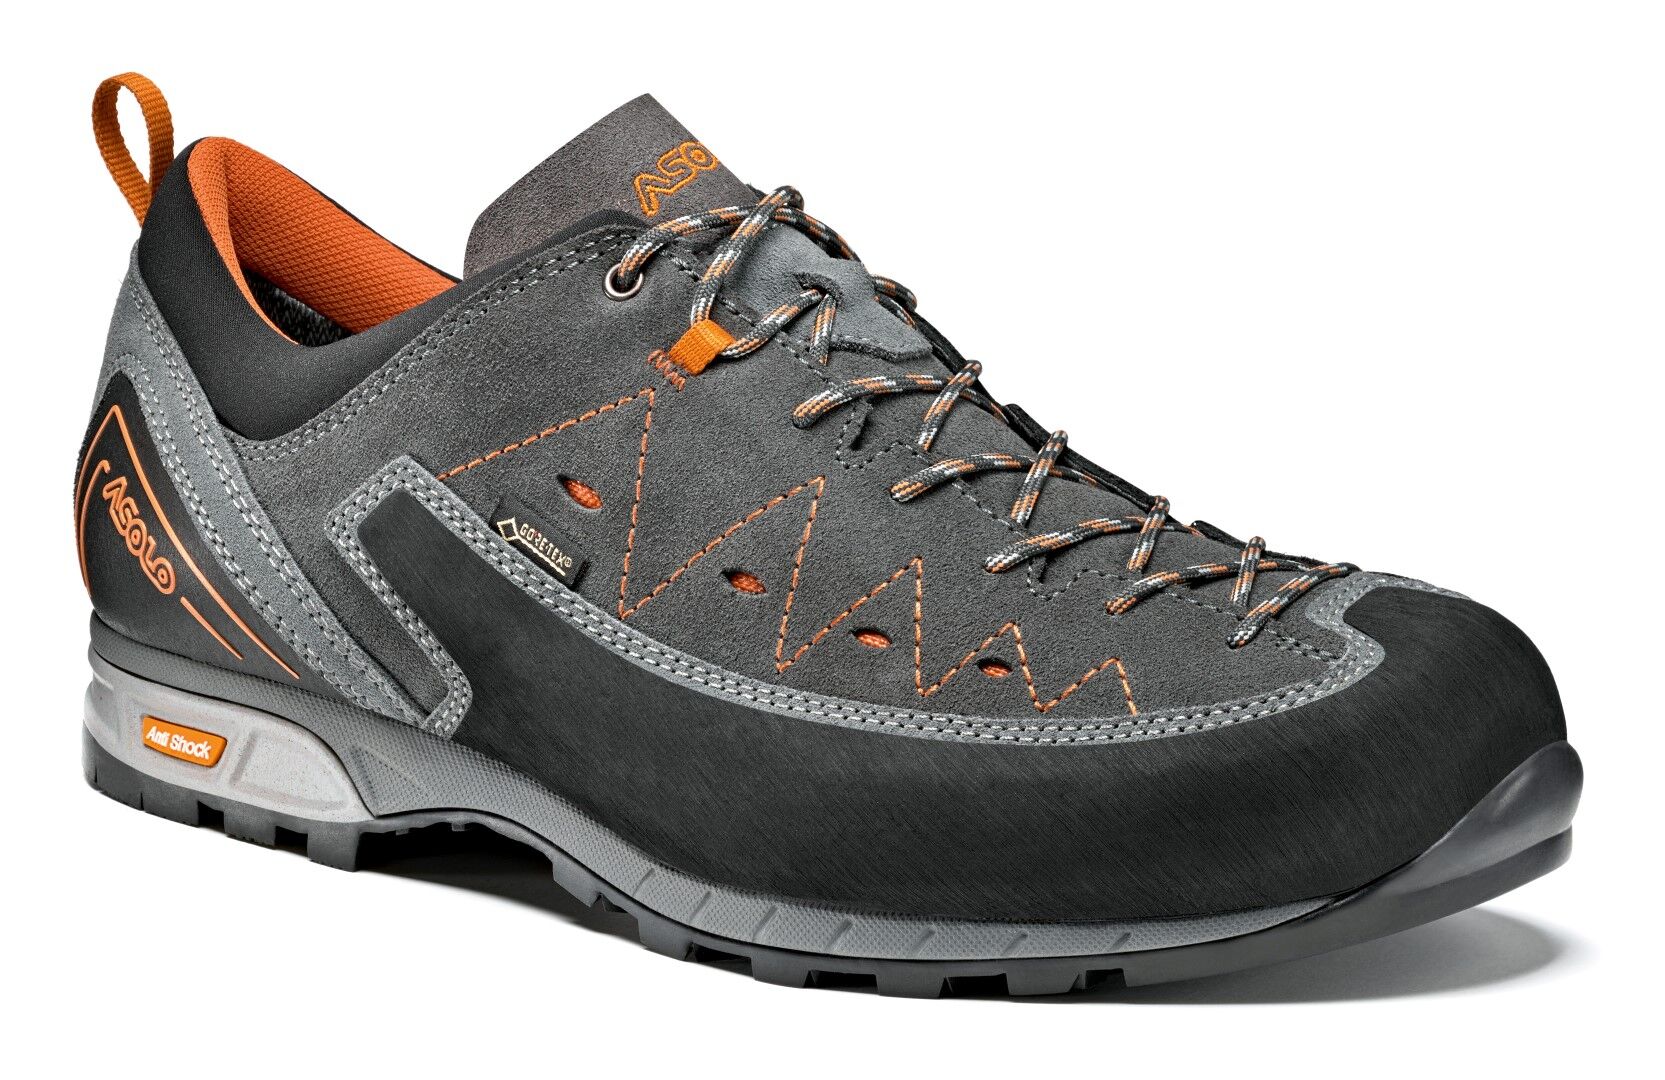 Asolo Apex GV - Approach shoes - Men's